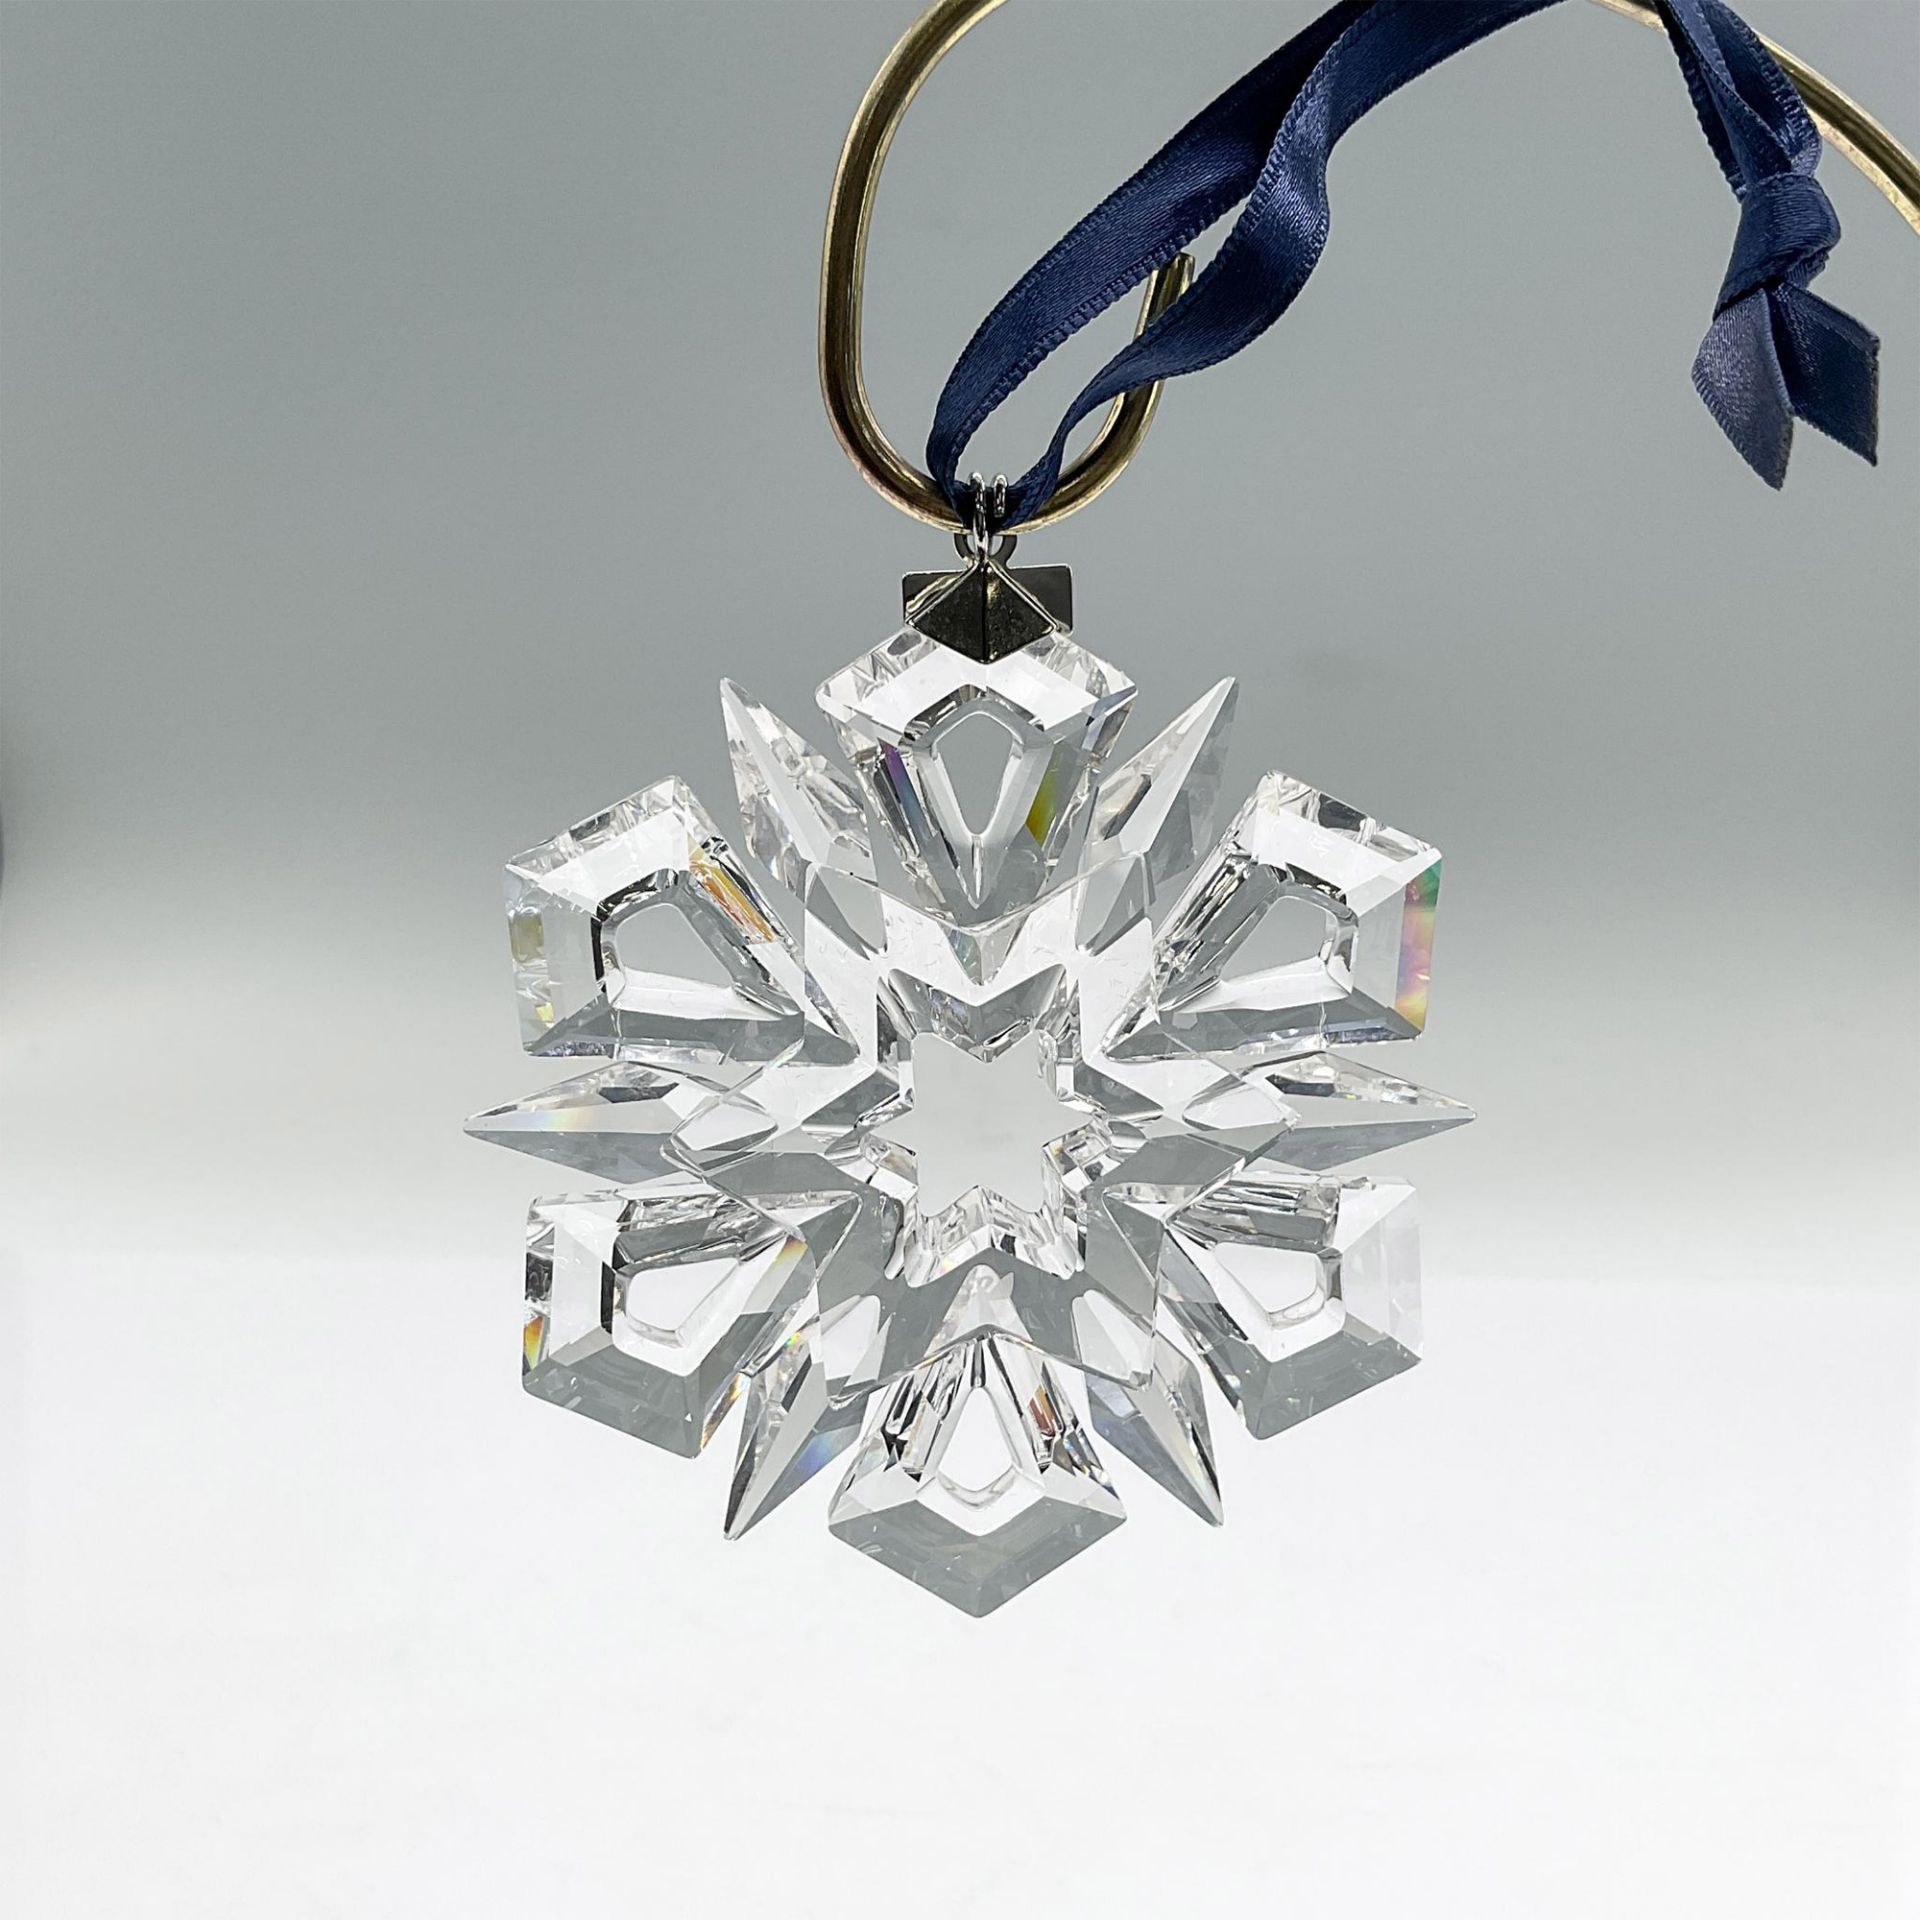 Swarovski Crystal Christmas Ornament 1999 - Image 2 of 3